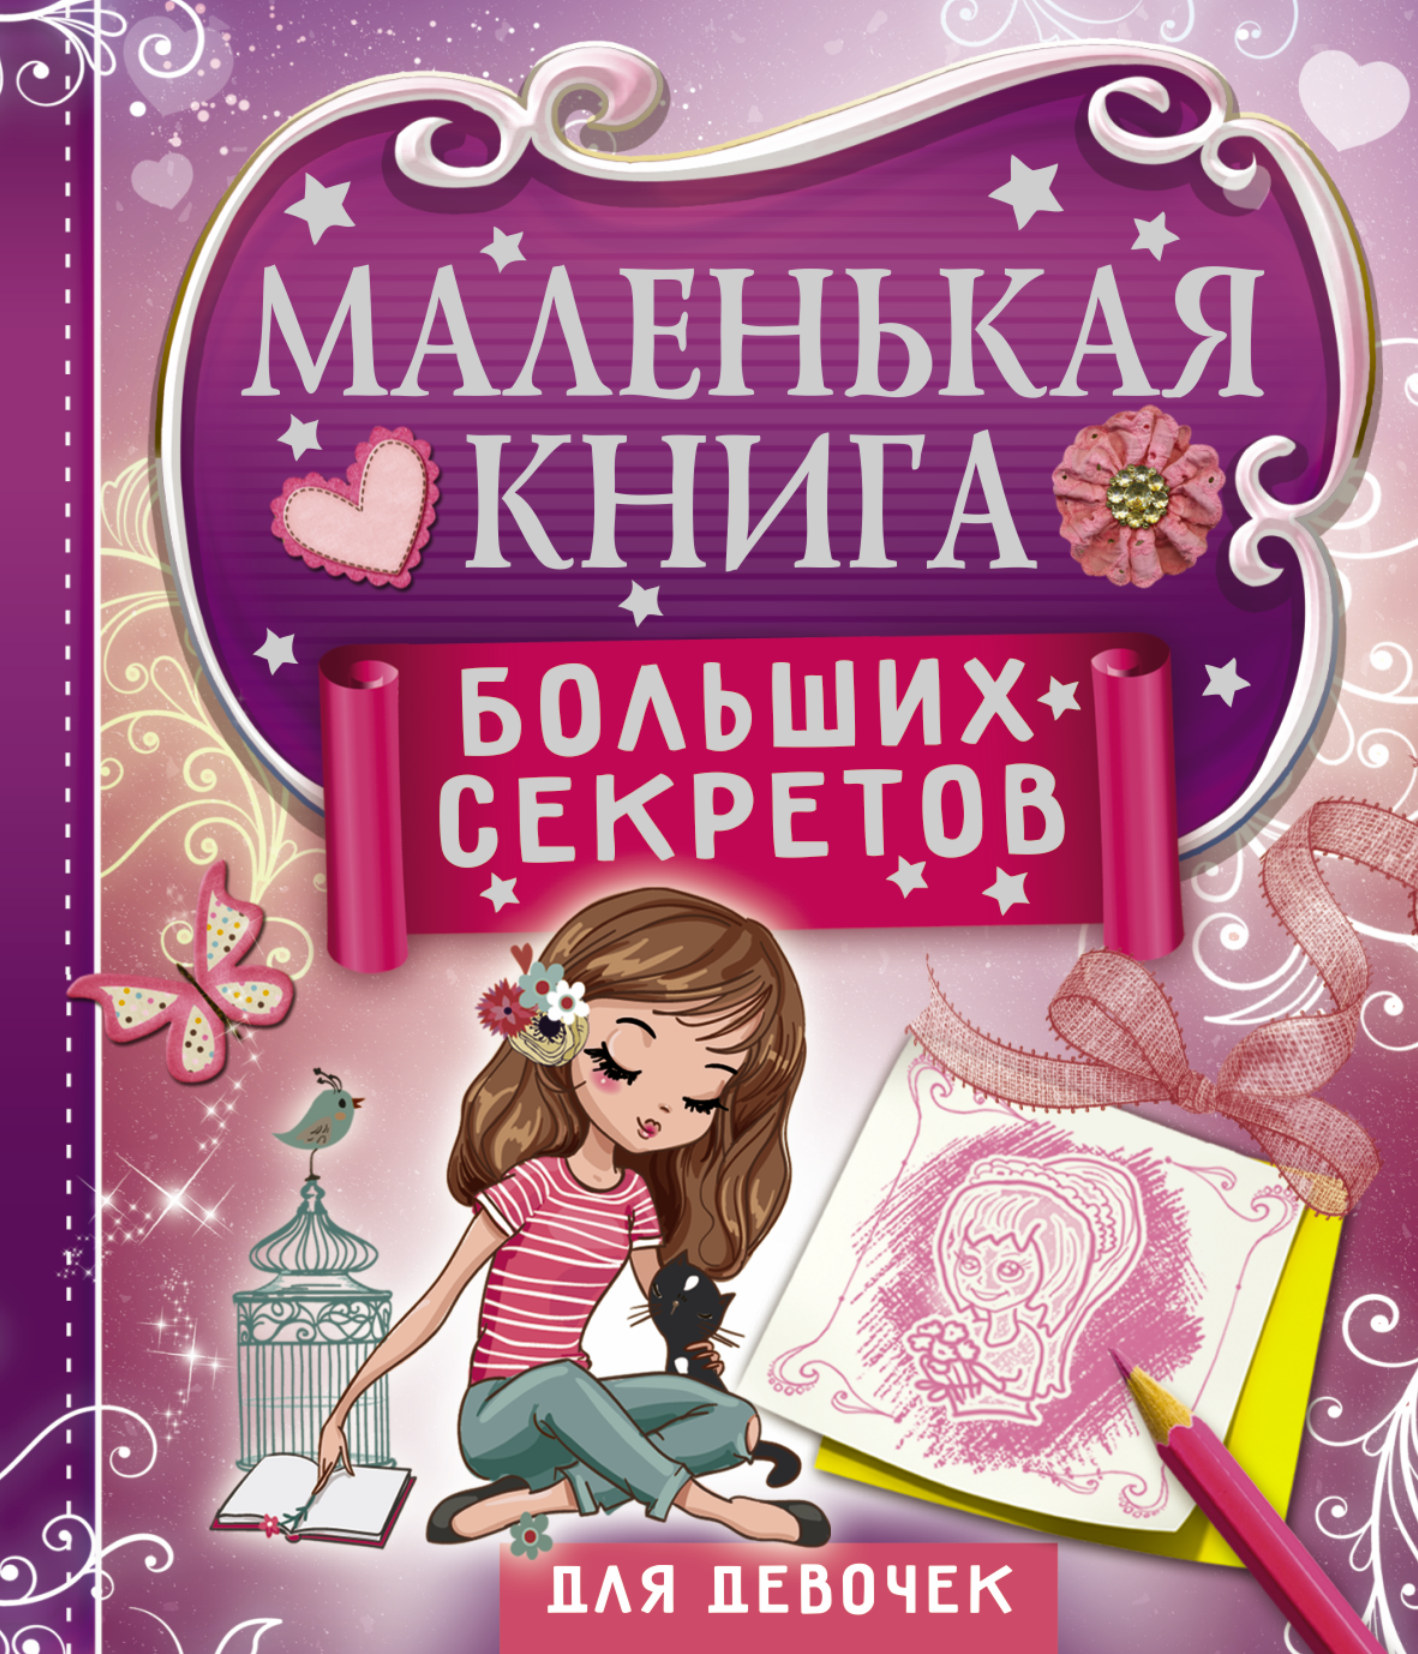 Маленькая книга больших секретов для девочек. Иолтуховская Е.А.